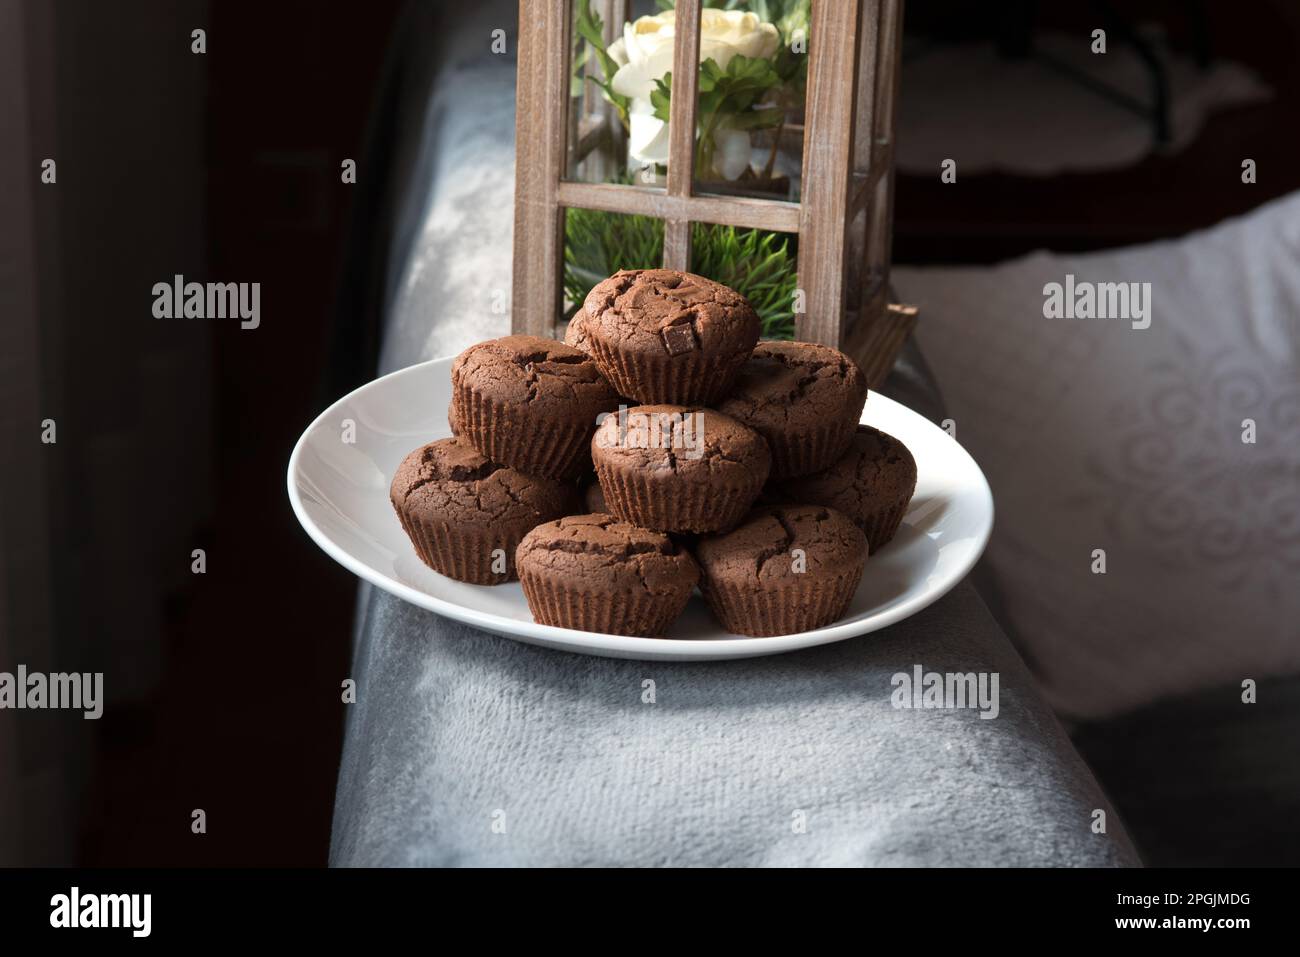 un bel piatto di muffin appena sfornati, muffin al caçao con gocce di cioccolata, dolci al cioccolato su un piatto Banque D'Images